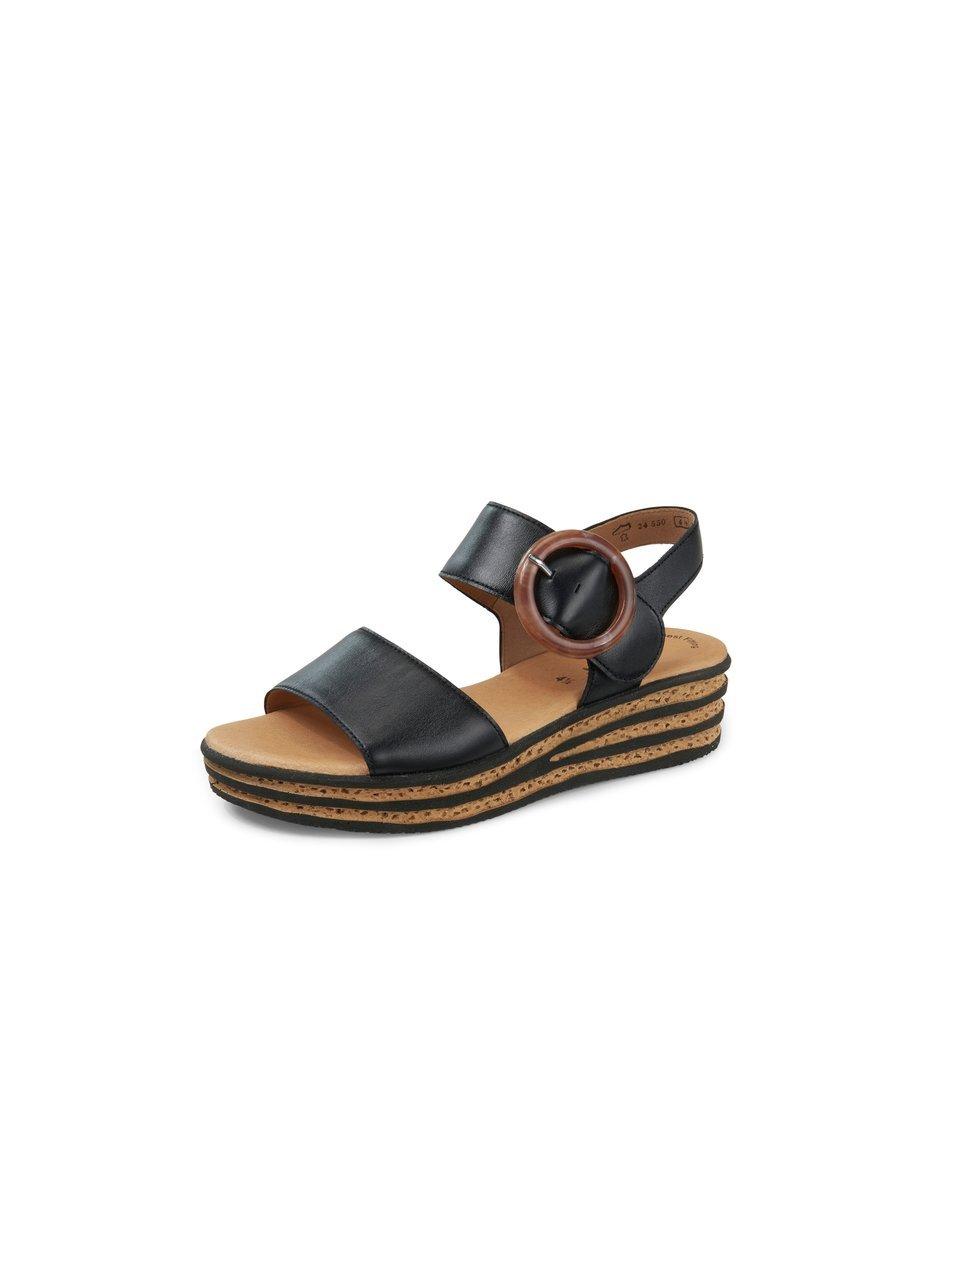 Gabor -Dames - zwart - sandalen - maat 38.5